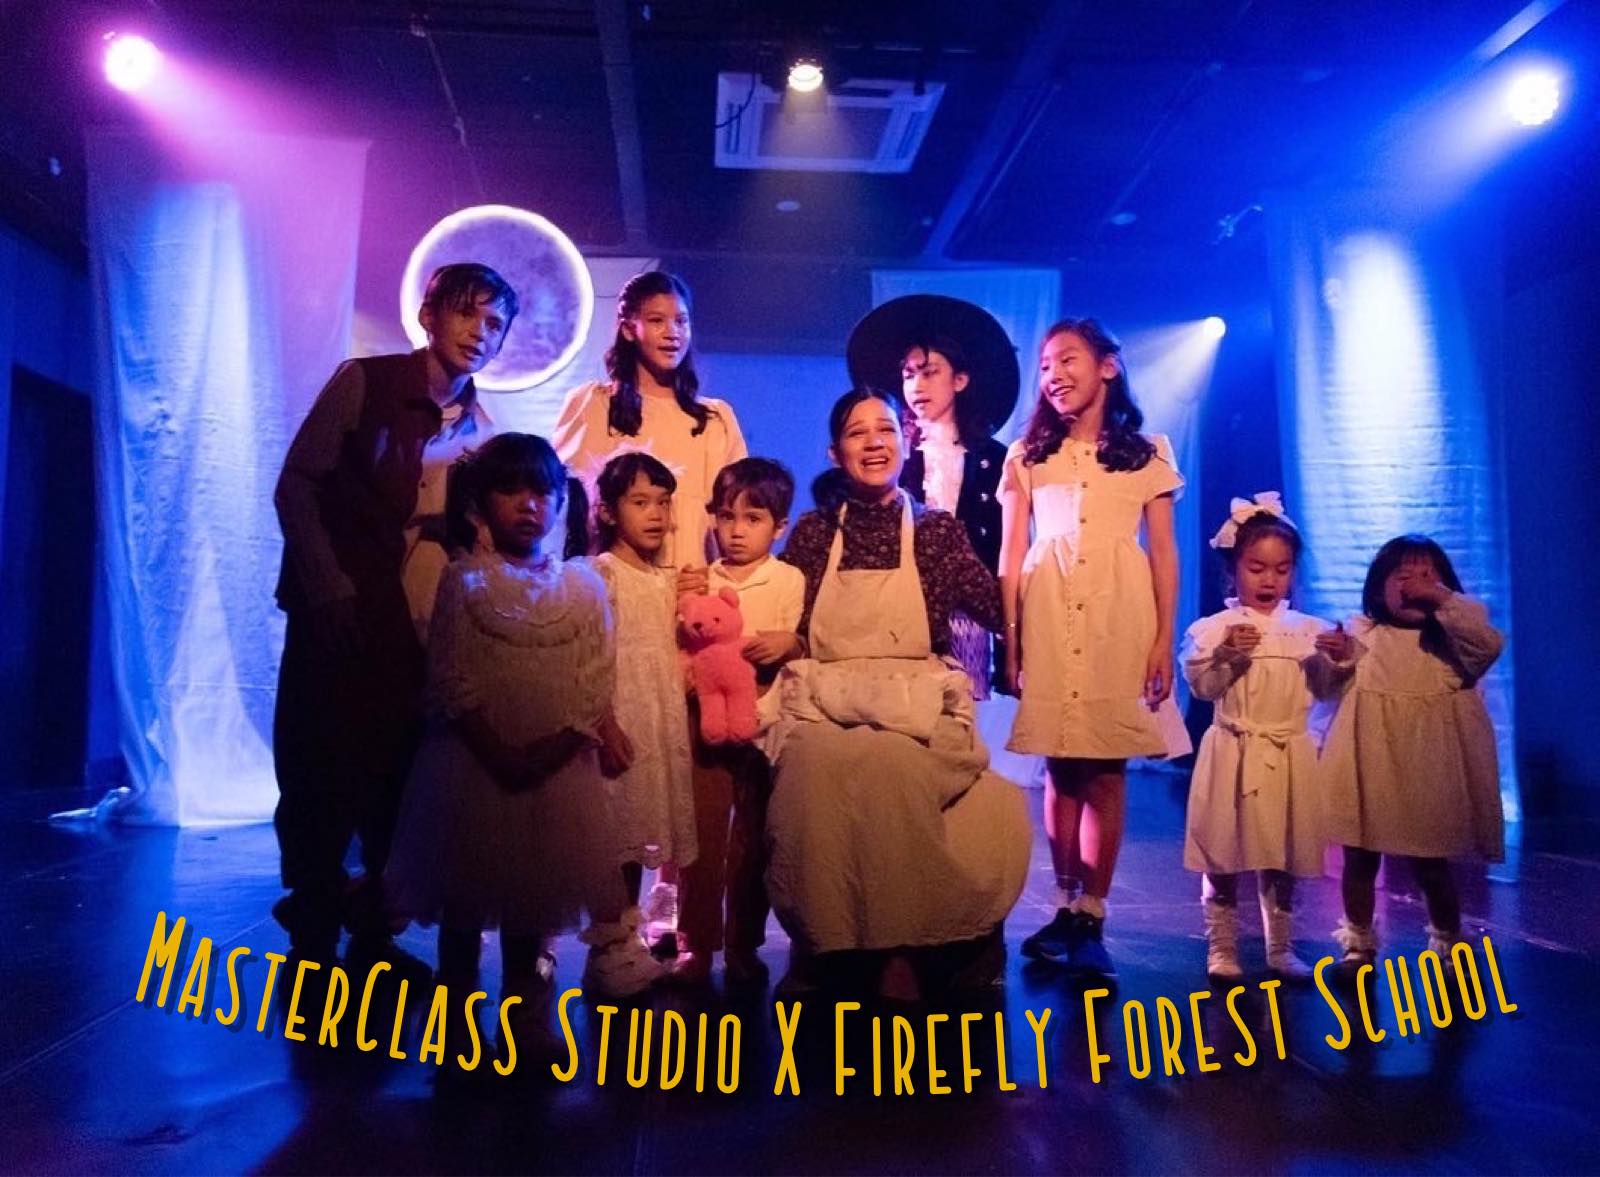 Firefly Forest School Theater Project 2022 x MasterClass Studio Production 

เราเรียนรู้ผ่านกระบวนการทางธรรมชาติและศิลปะ…